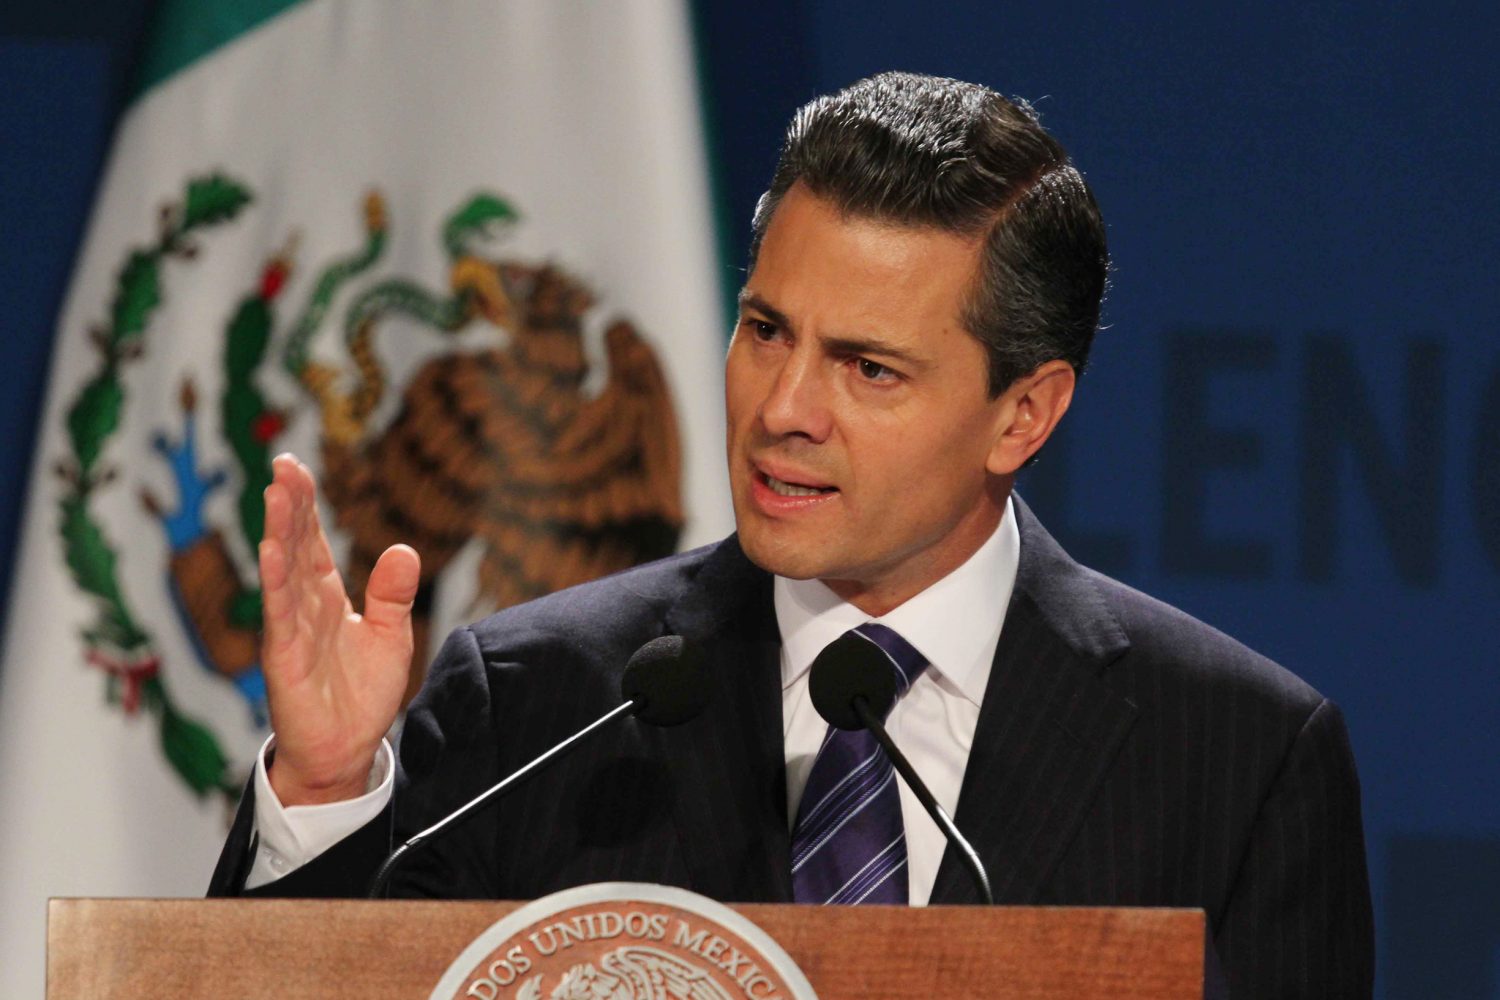 31107023.- México, DF.- El presidente Enrique Peña Nieto encabezó la inauguración del México Summit 2013 : El próximo capítulo, donde refirió que el mapa energético está cambiando y que de no convertirnos en un país que explote sus recursos, México perderá competitividad y las inversiones productivas tendrían el riesgo de irse a otra parte.
NOTIMEX/FOTO/GUSTAVO DURÁN/FRE/POL/